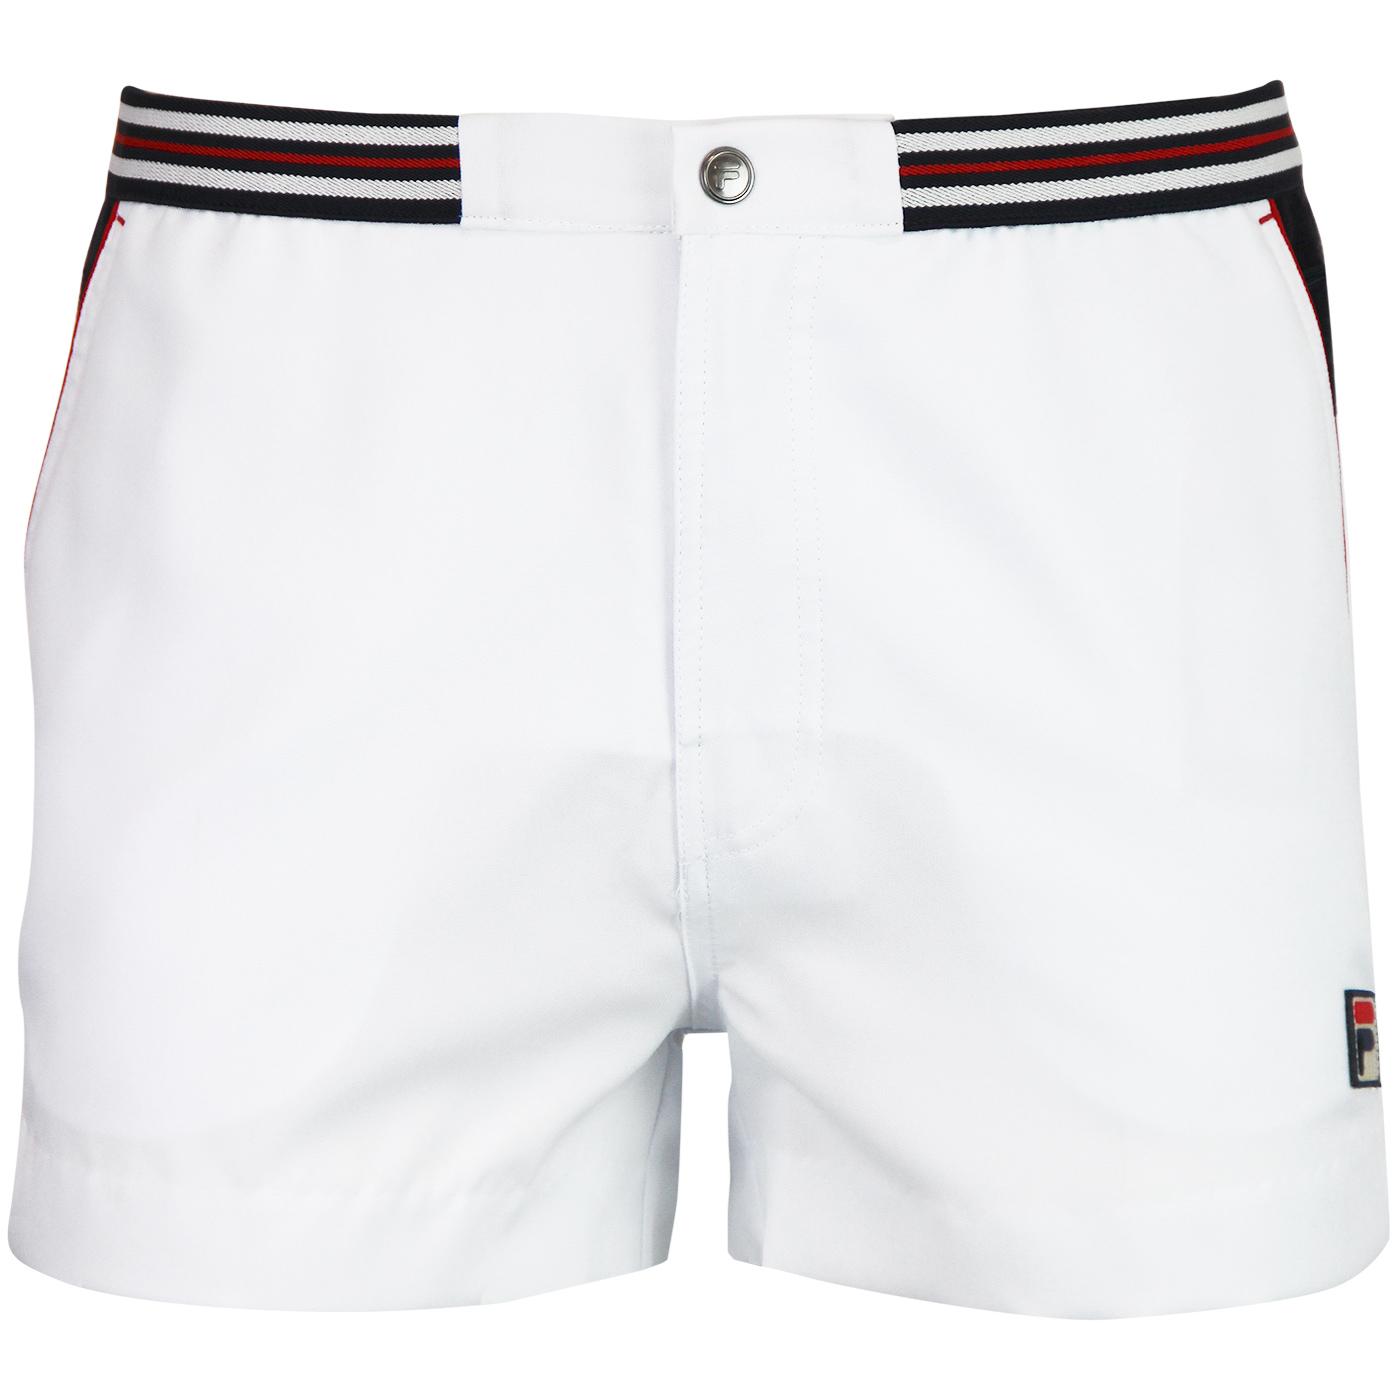 Hightide 4 Retro Tennis Shorts White 